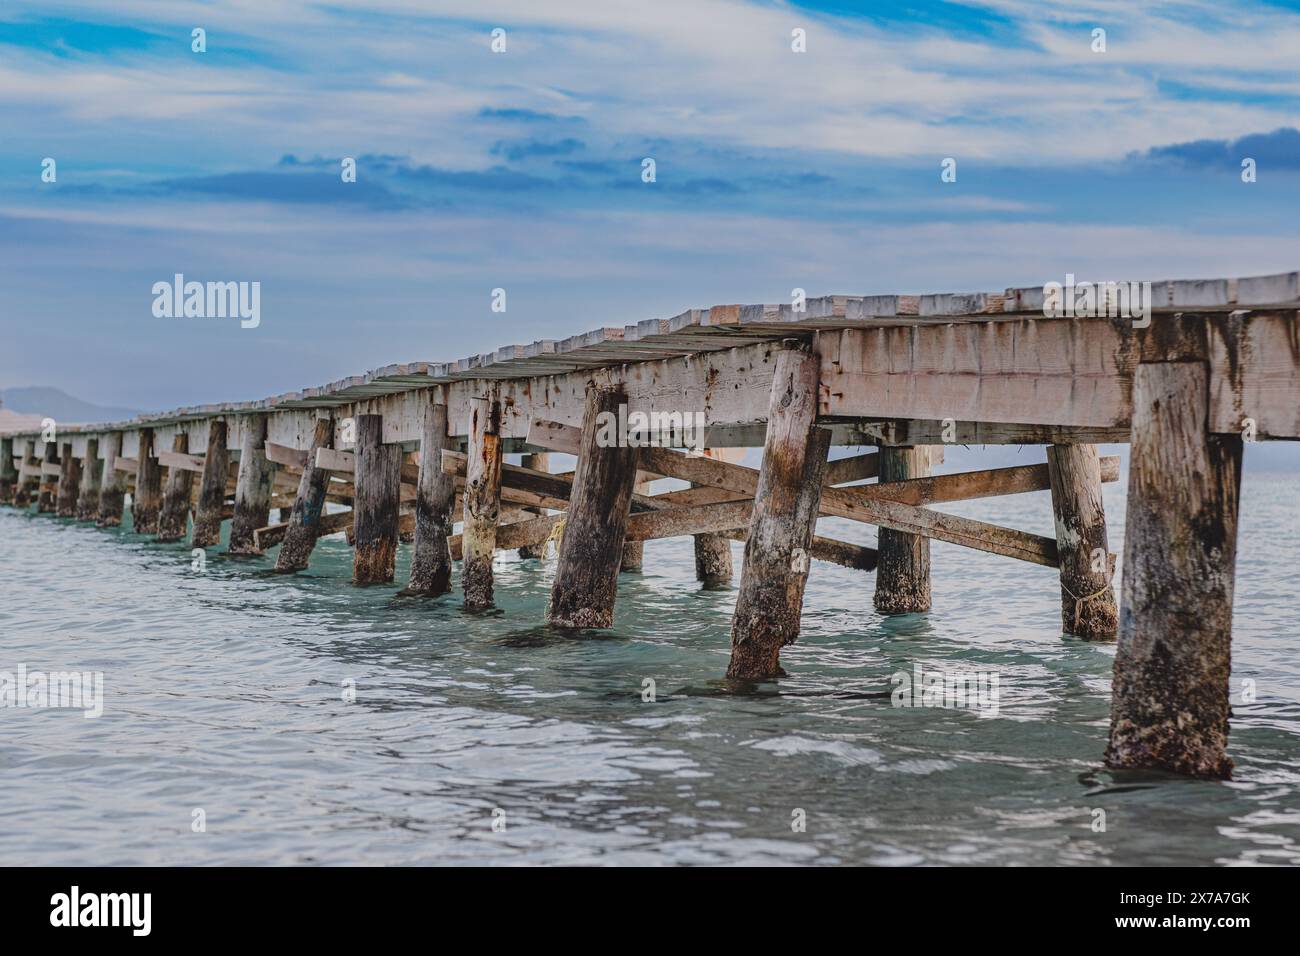 Foto eines hölzernen Piers, der sich ins Meer erstreckt. Schöne Seitenansicht auf den Pier. Ruhiges türkisfarbenes Meerwasser, hölzerne Brückenstruktur und wunderschöner Himmel. Stockfoto